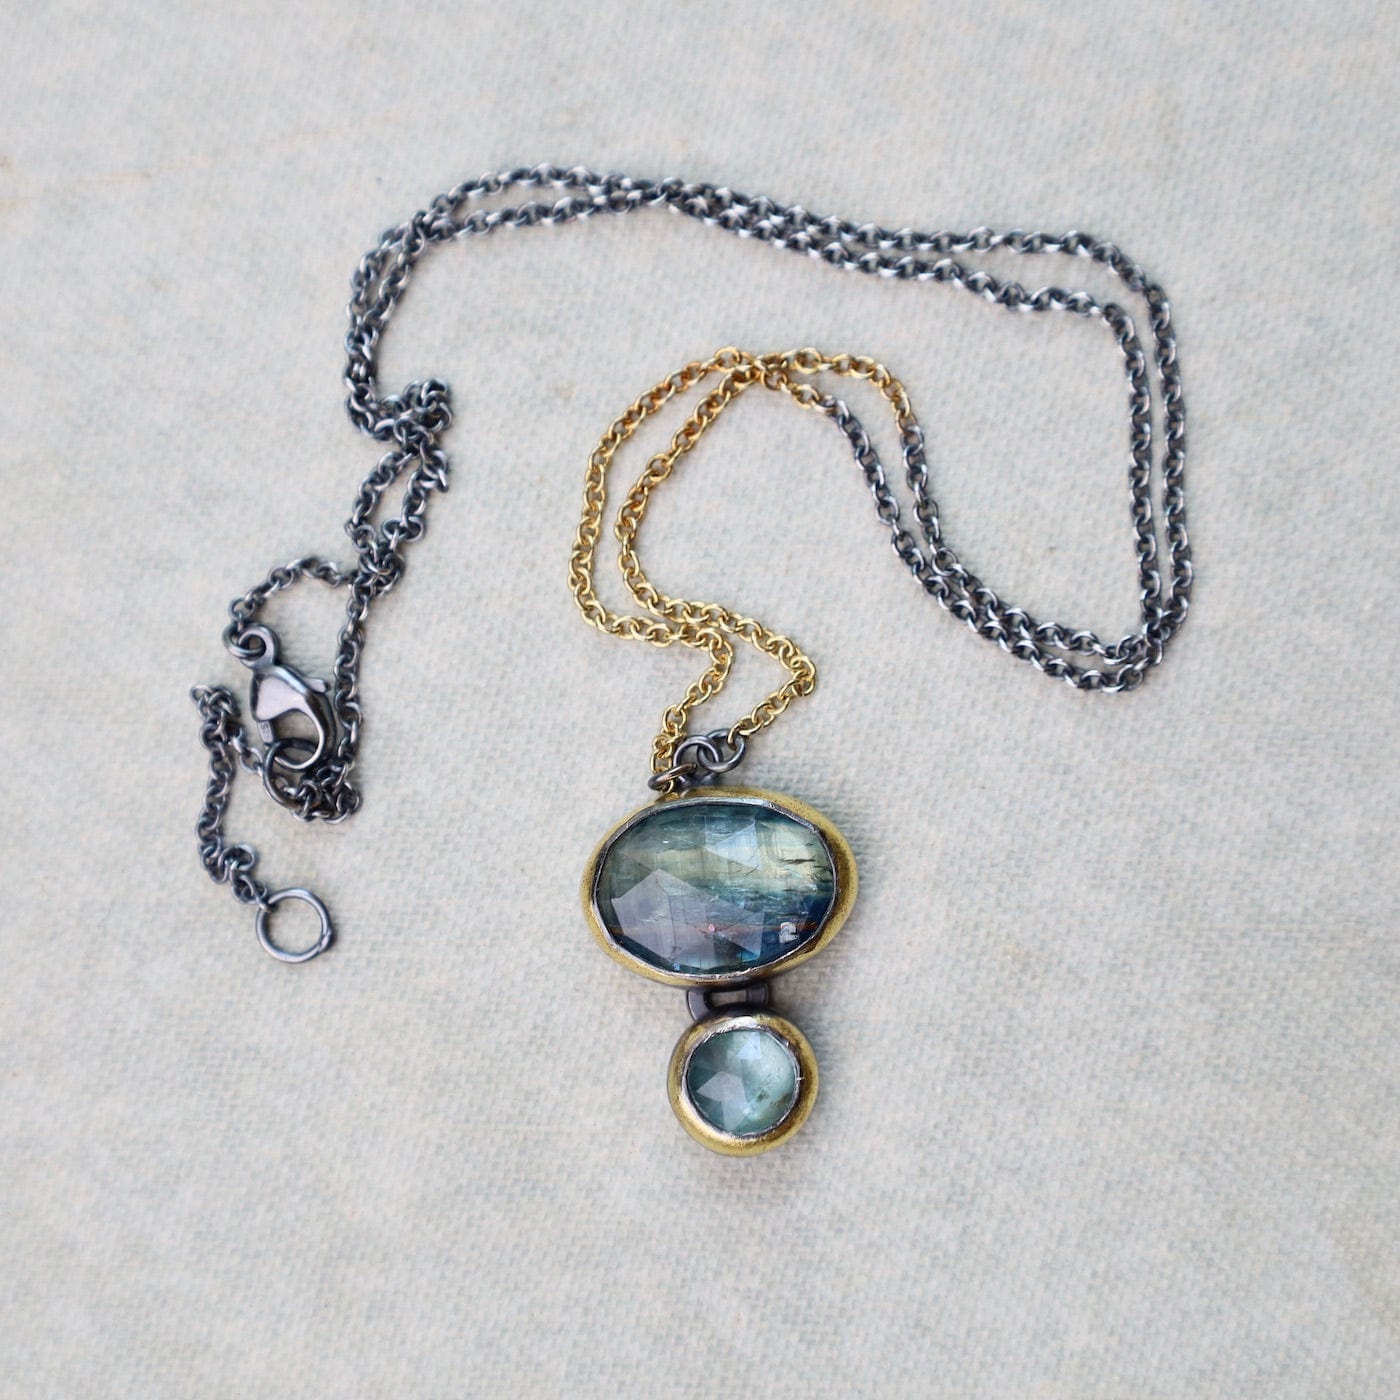 NKL Double Rim Necklace with Split Chain - Bi-color Kyanite & Sky Kyanite